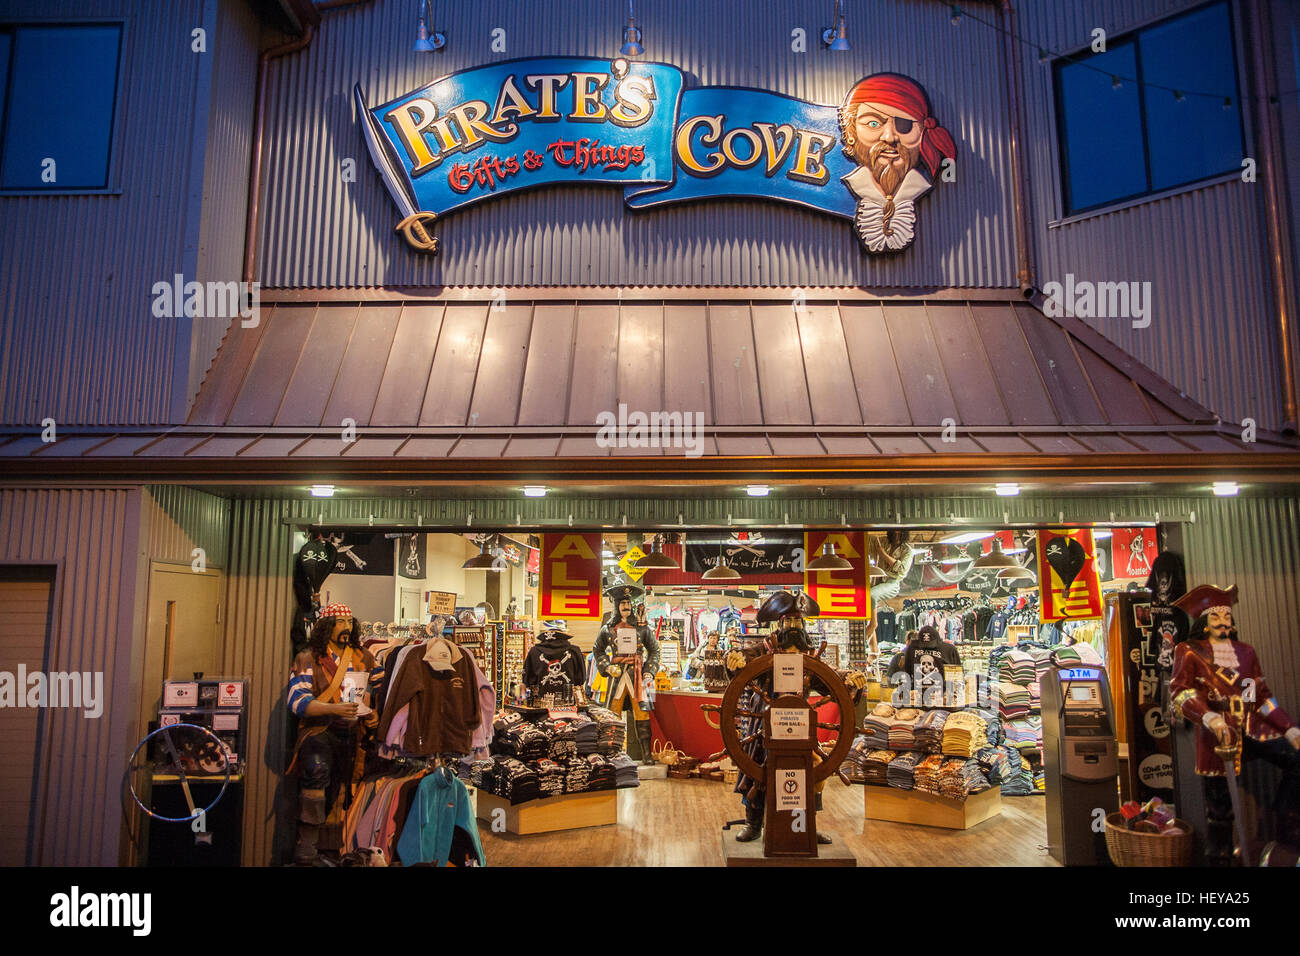 Pirate's Cove,achats,tourisme,,Monterey,Quai de la jetée pier,,tat,bon marché,cadeaux,magasin,California,USA,USA,United States of America. Banque D'Images